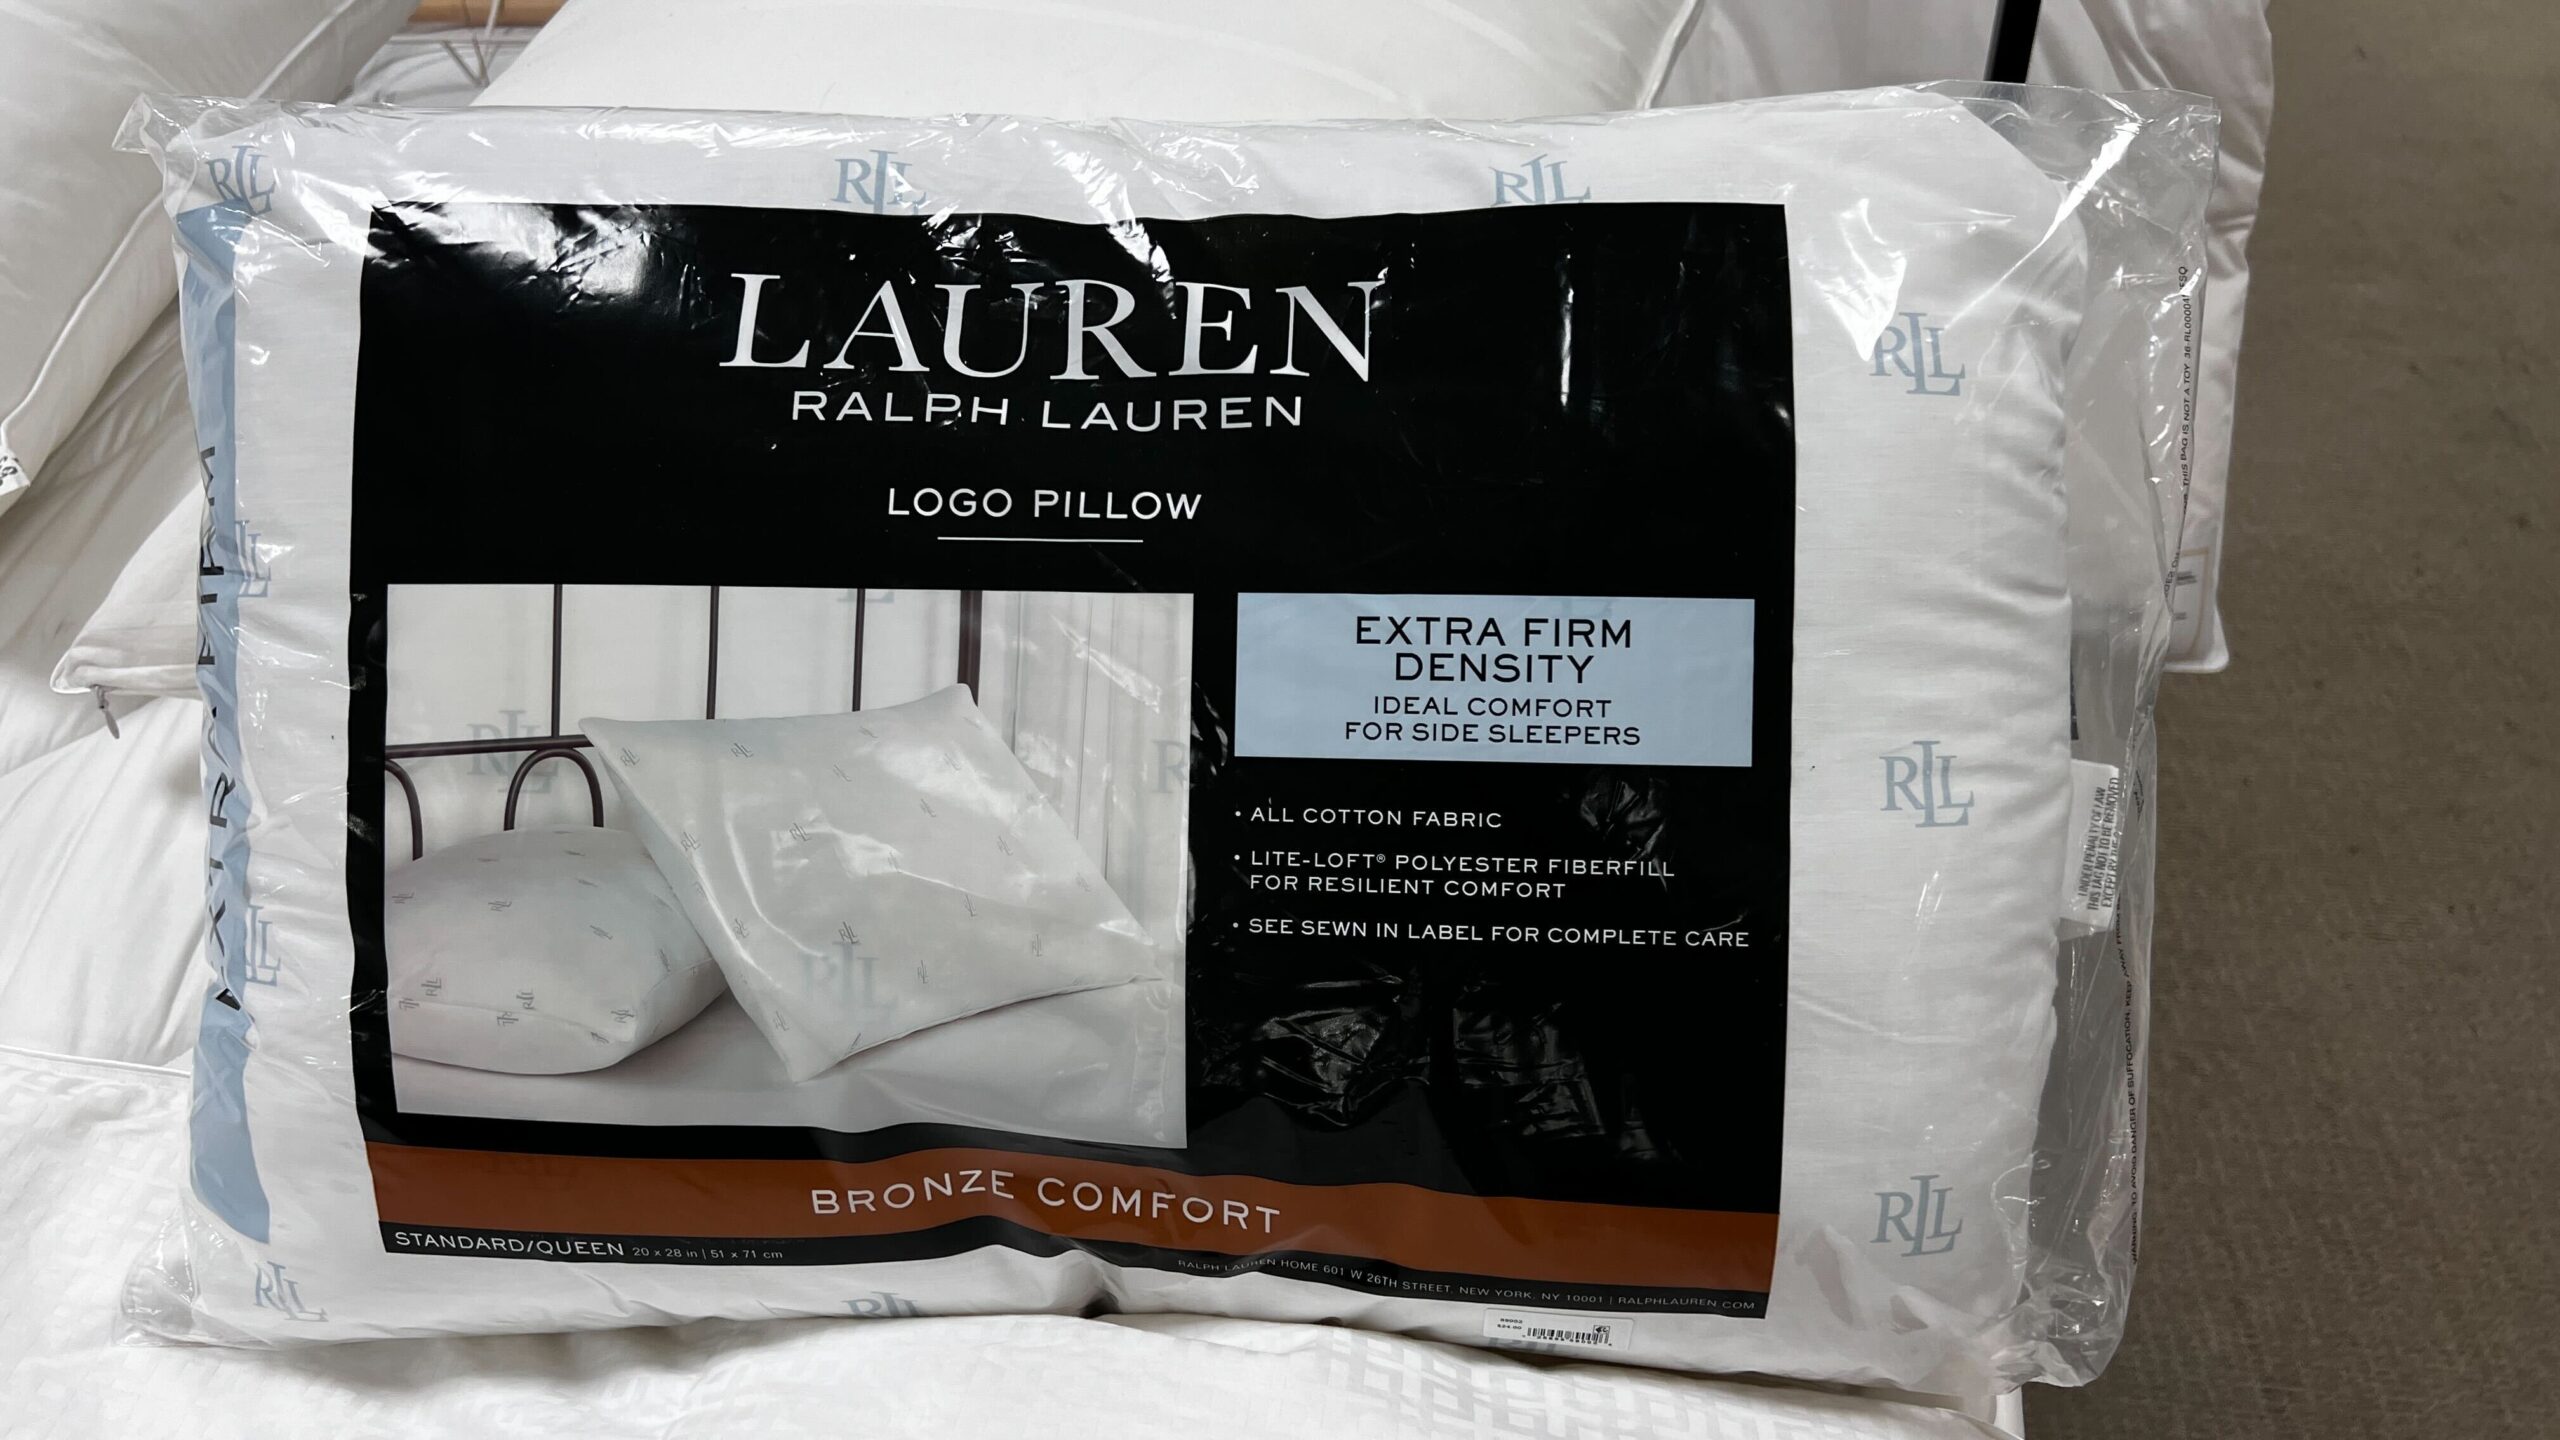 ralph-lauren-logo-pillow-only-7-99-at-macy-s-reg-24-the-freebie-guy